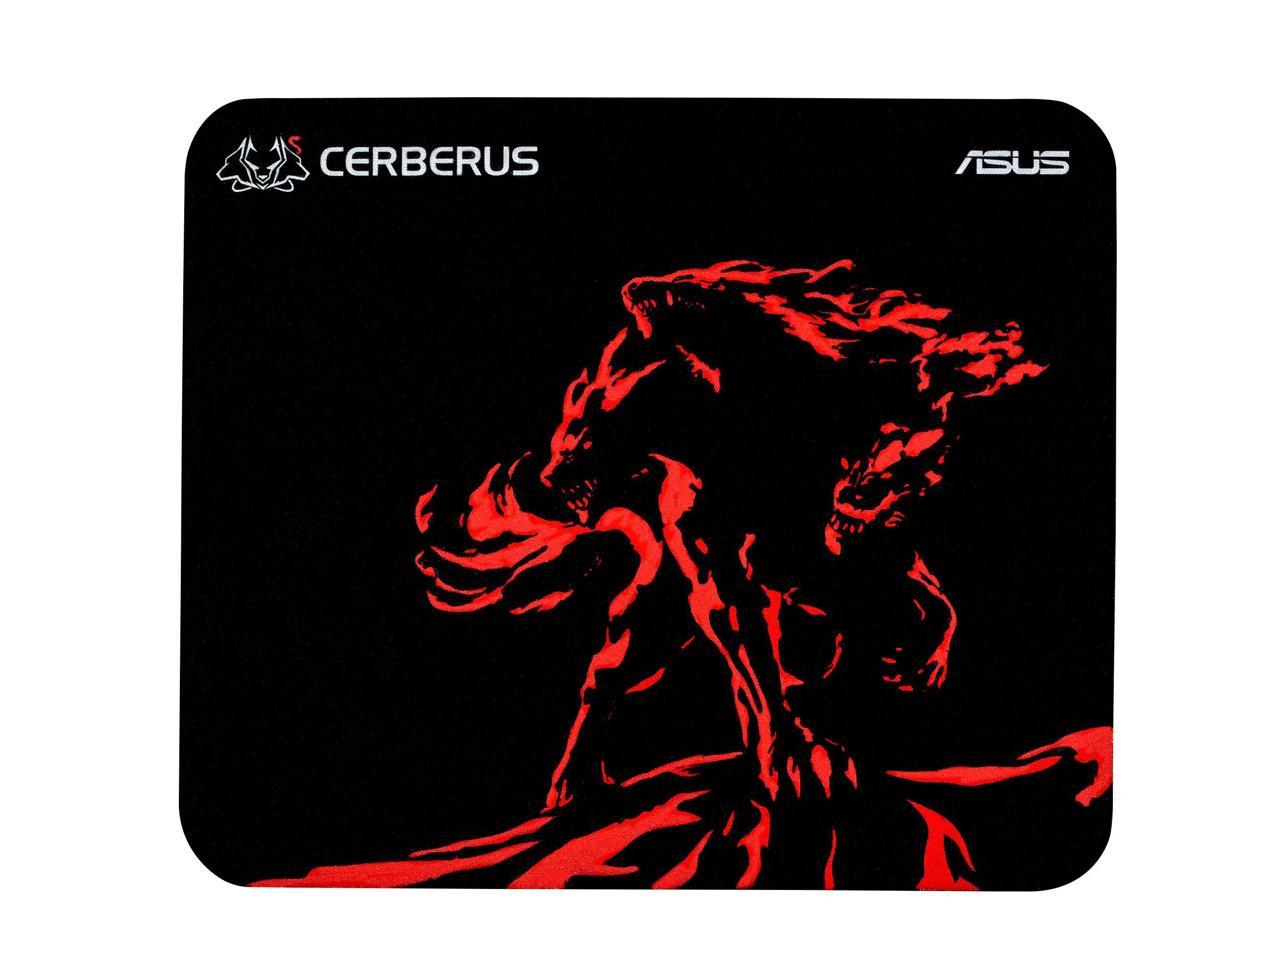 ASUS Cerberus